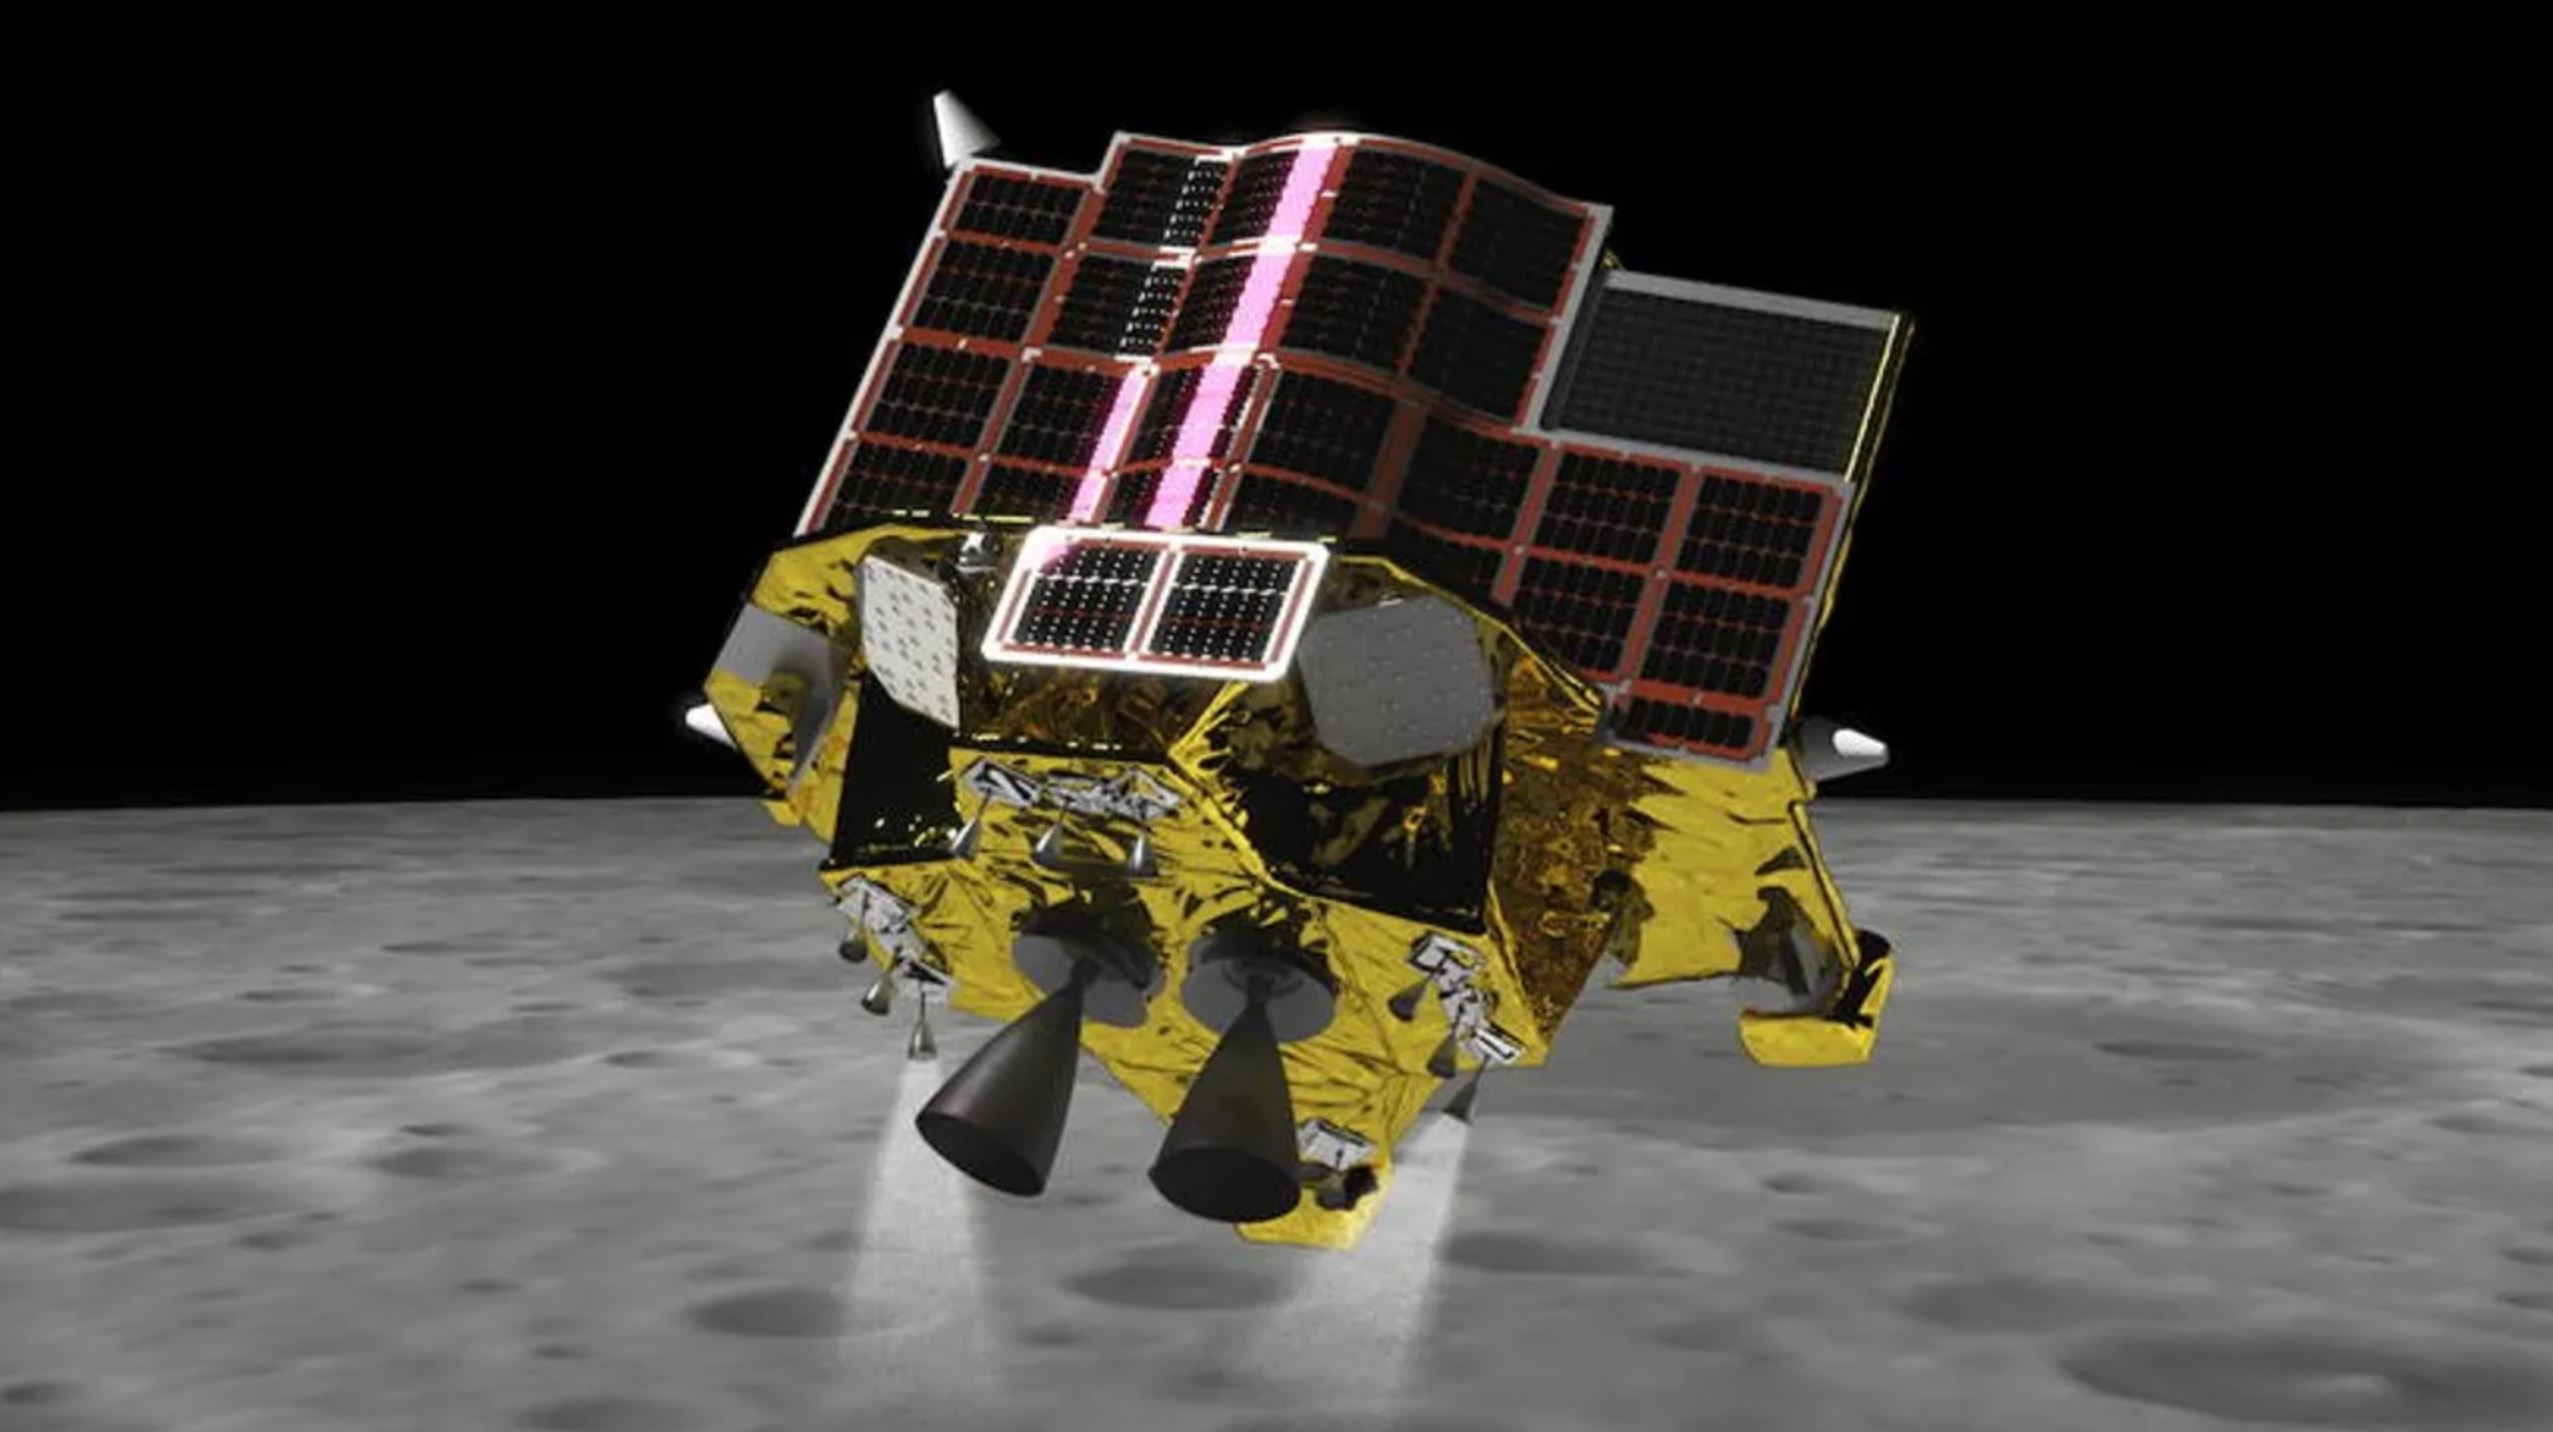 日本の月着陸船「SLIM」が月面飛行を実現